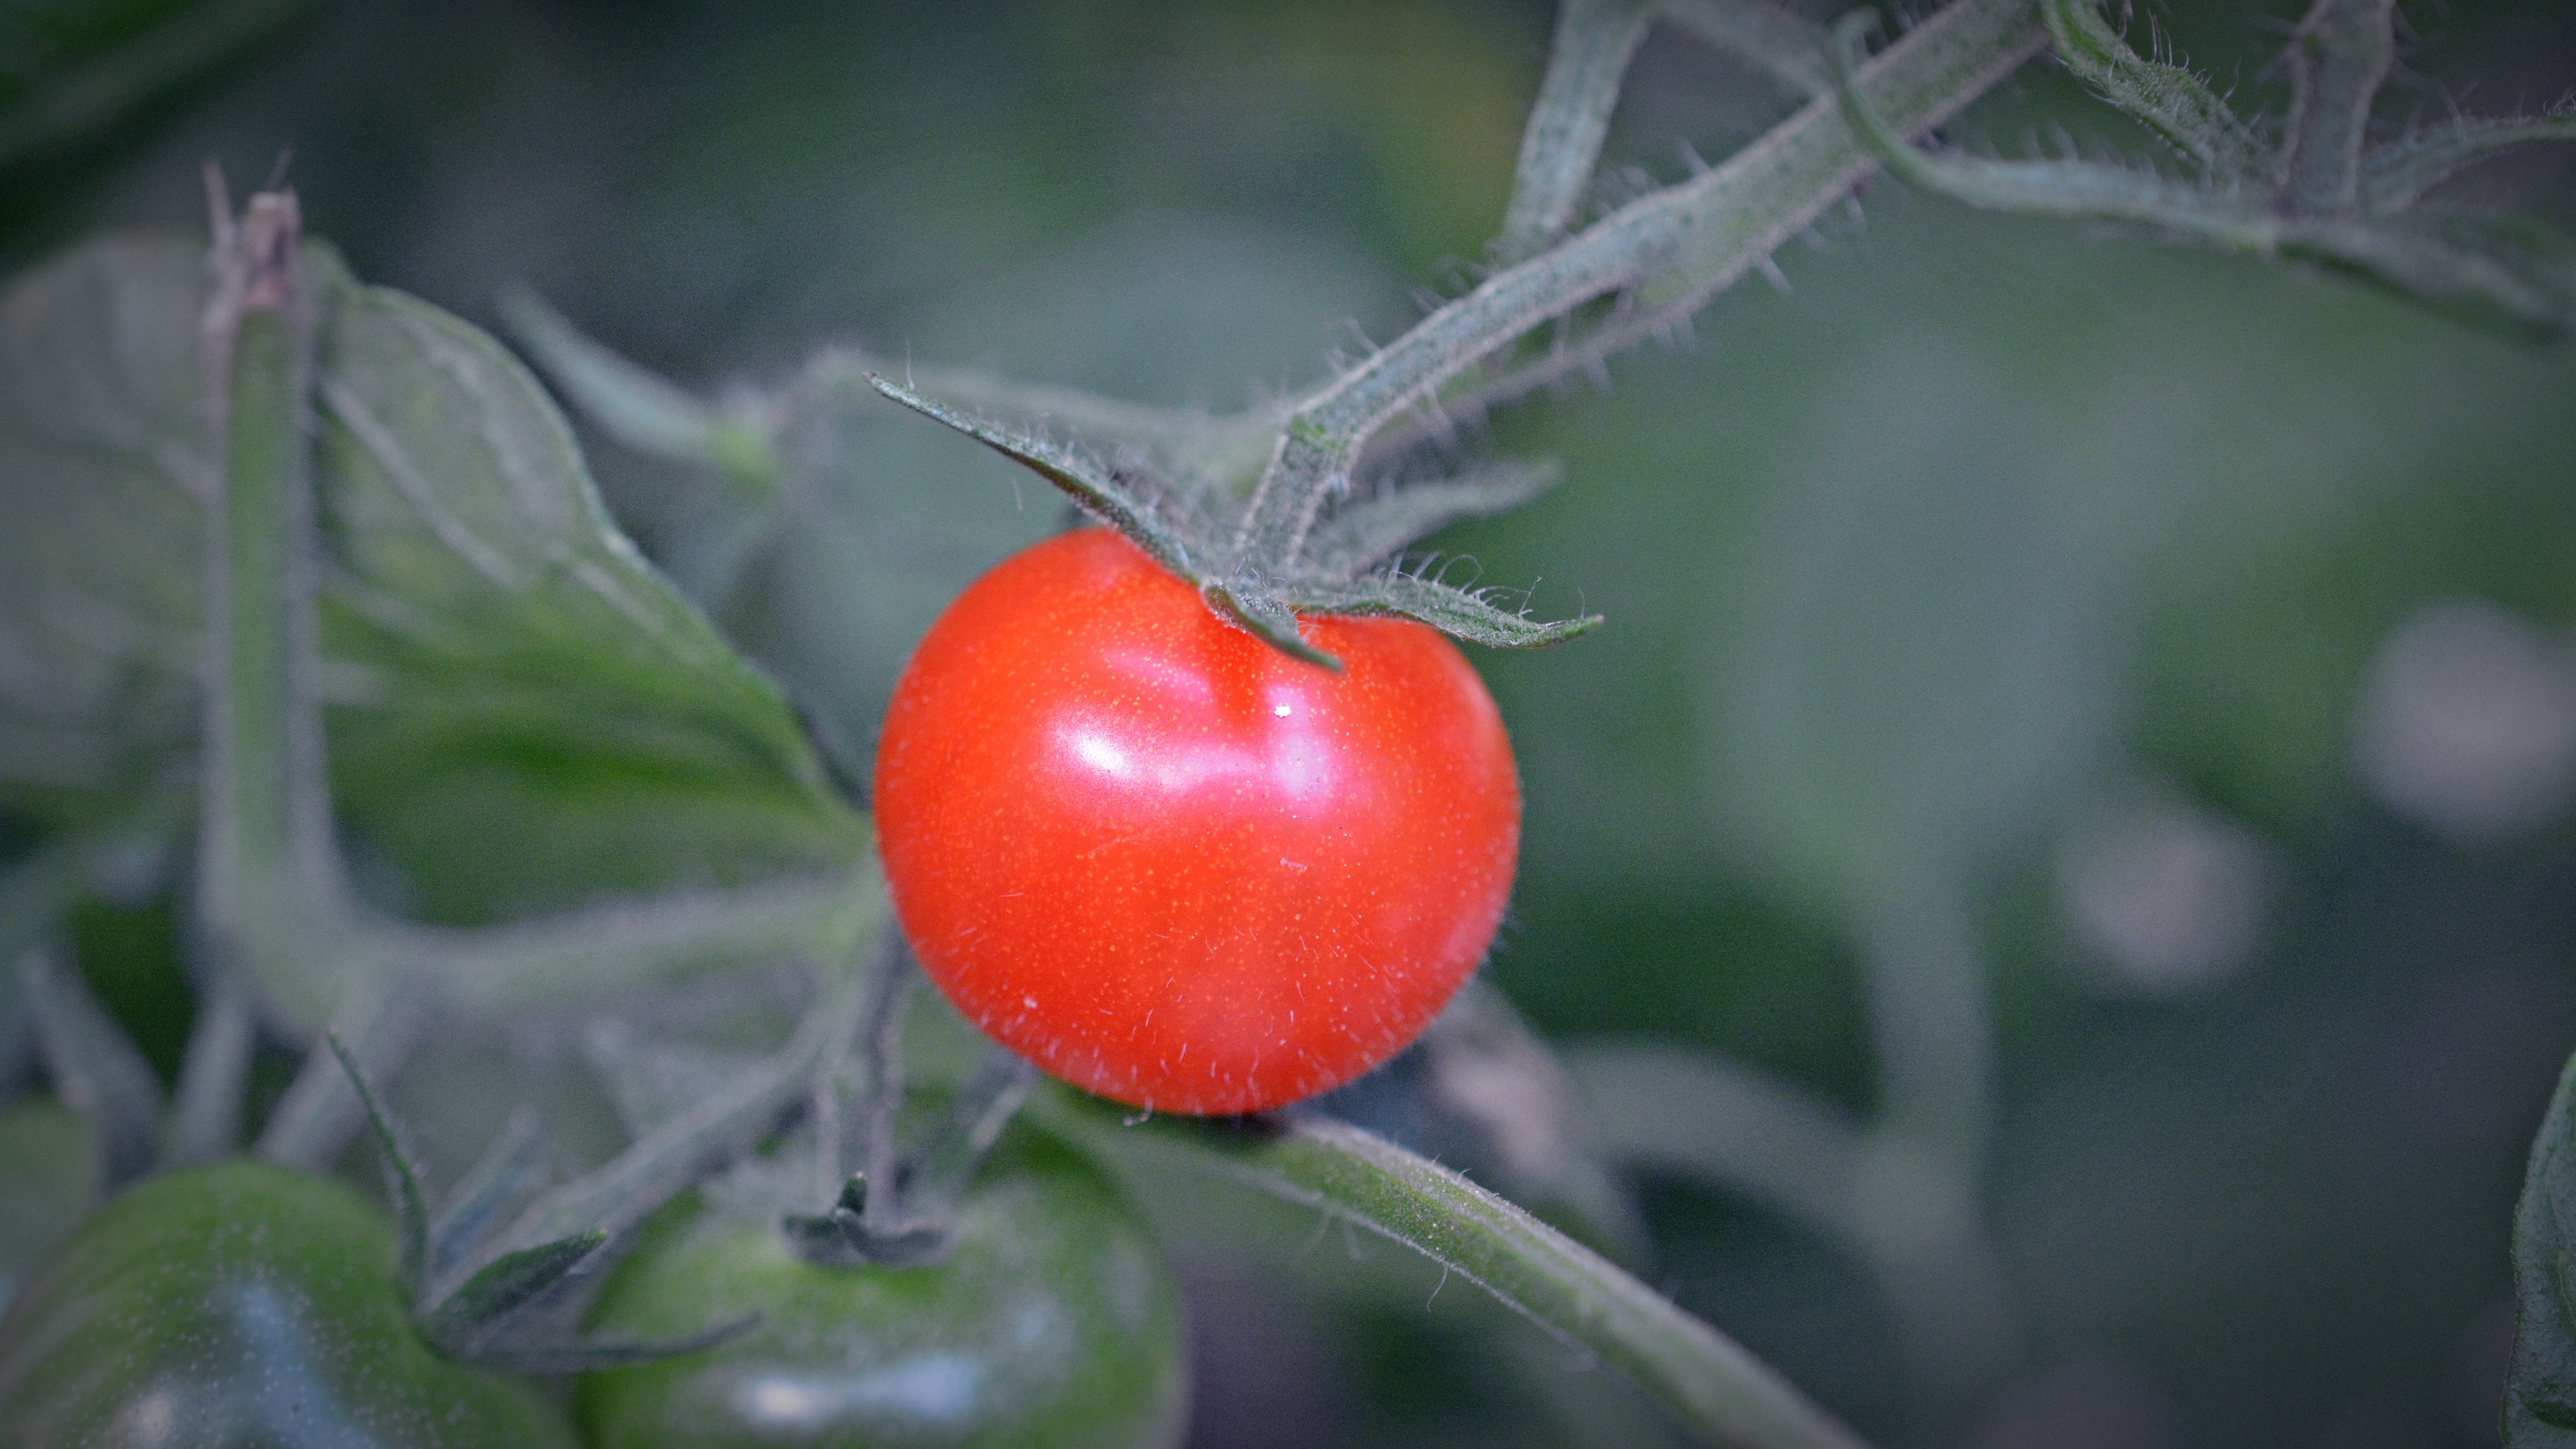 томат турецкий стелющийся фото